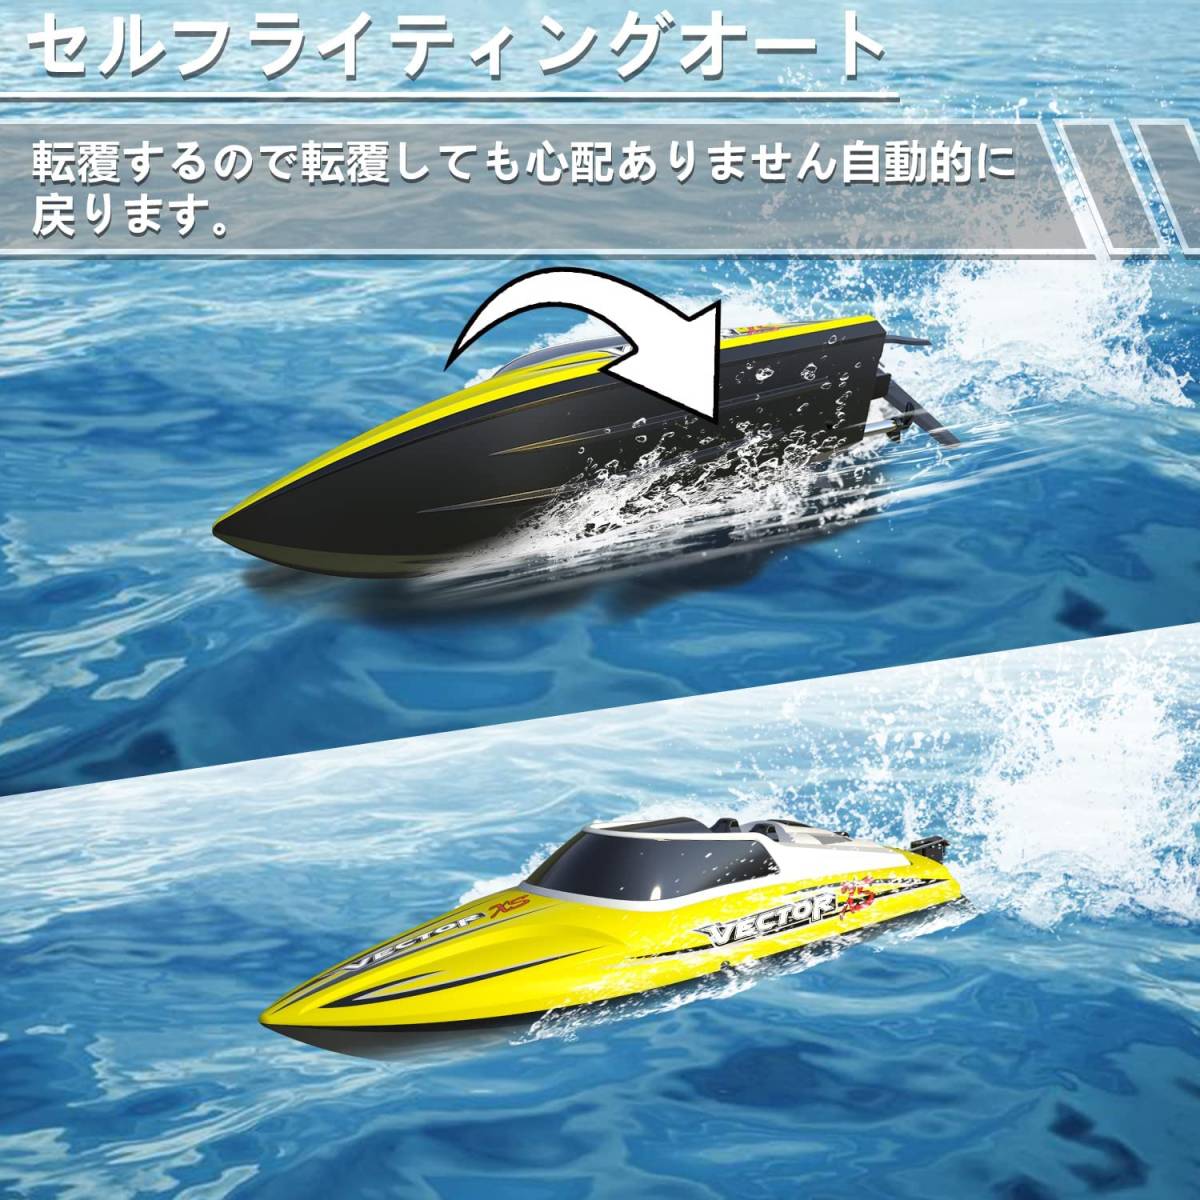 ラジコン ボート RCボート 高速30km/h レーシングボート操作時間25分間 低電圧保護装置付き 転覆回復設計 2.4Ghz送信 イエロー